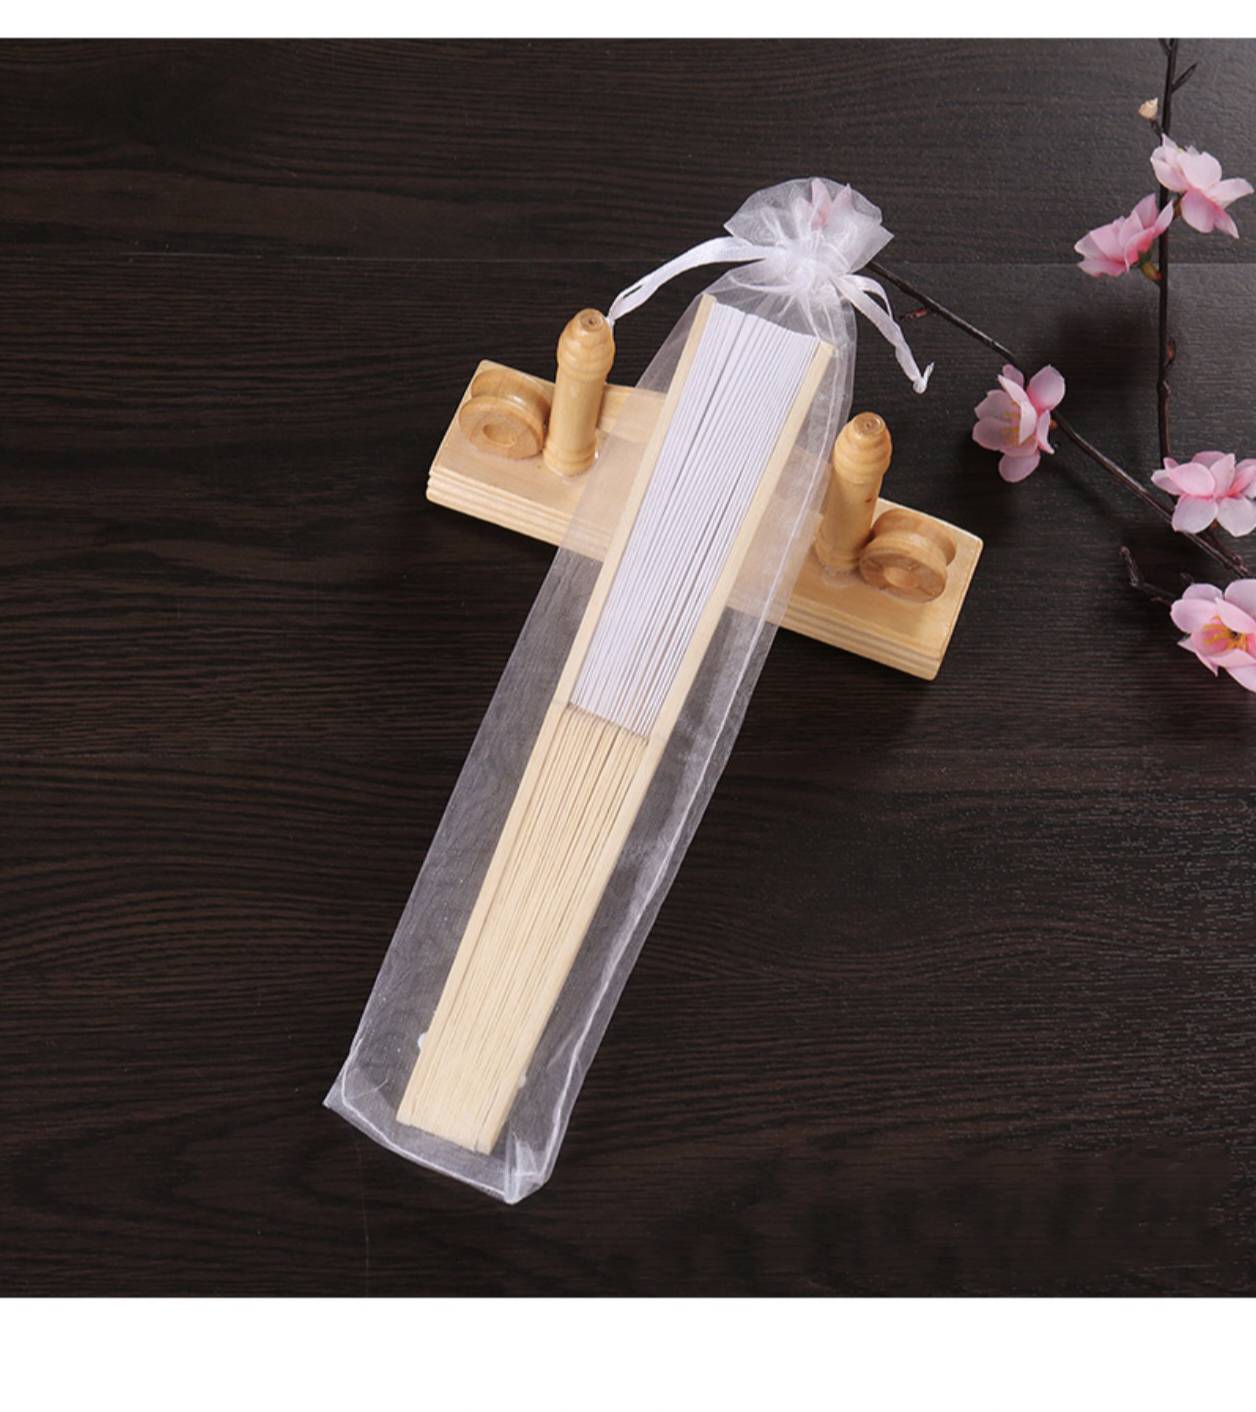 Ventilador de seda blanca de 7 pulgadas Ventilador de tela blanca Boda de boda plegable Ventilador de bambú de bambú Creación de bricolaje en blanco Publicidad